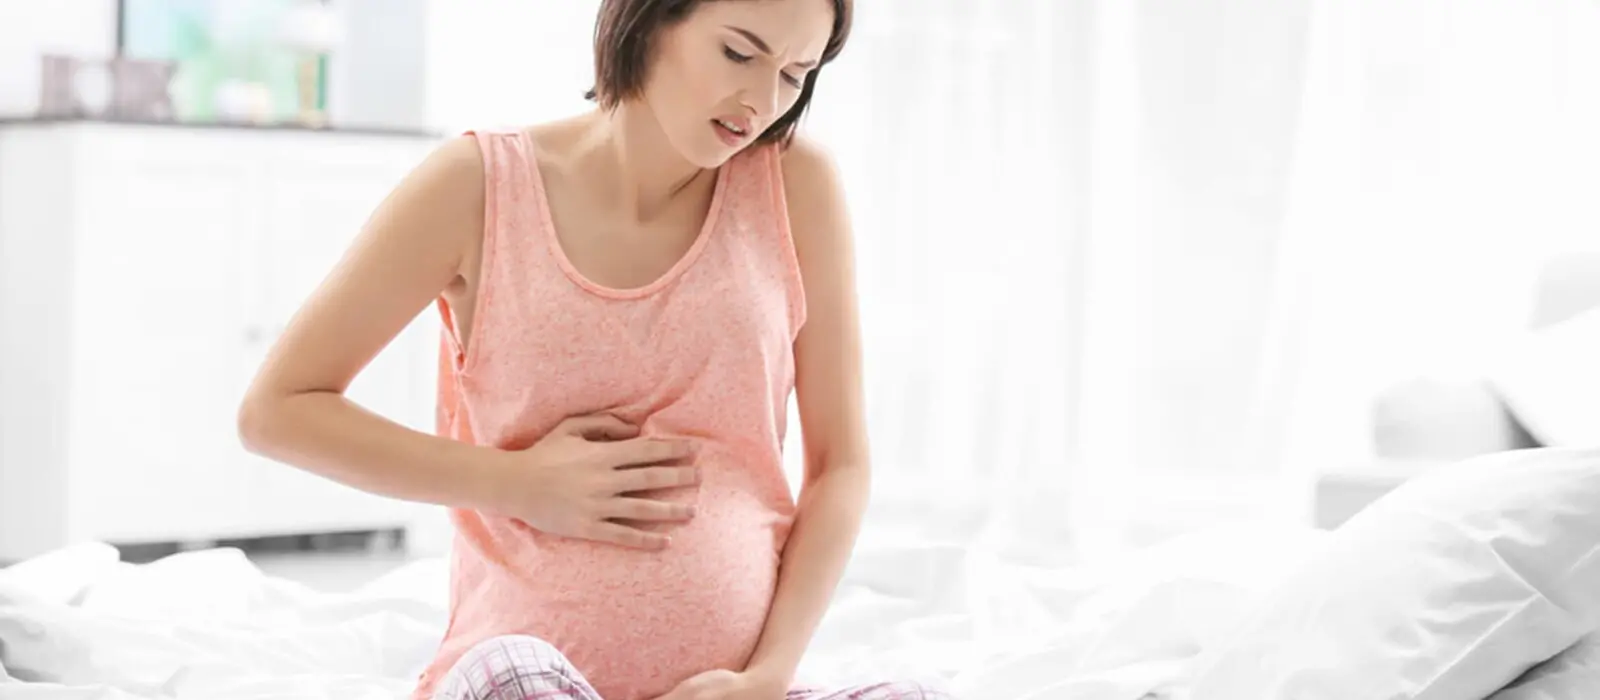 在經醫師判斷正式確認懷孕後，準媽媽體內的荷爾蒙也會隨之產生變化，進入懷孕初期，孕婦常會發現自己容易出現噁心想吐等懷孕徵兆。